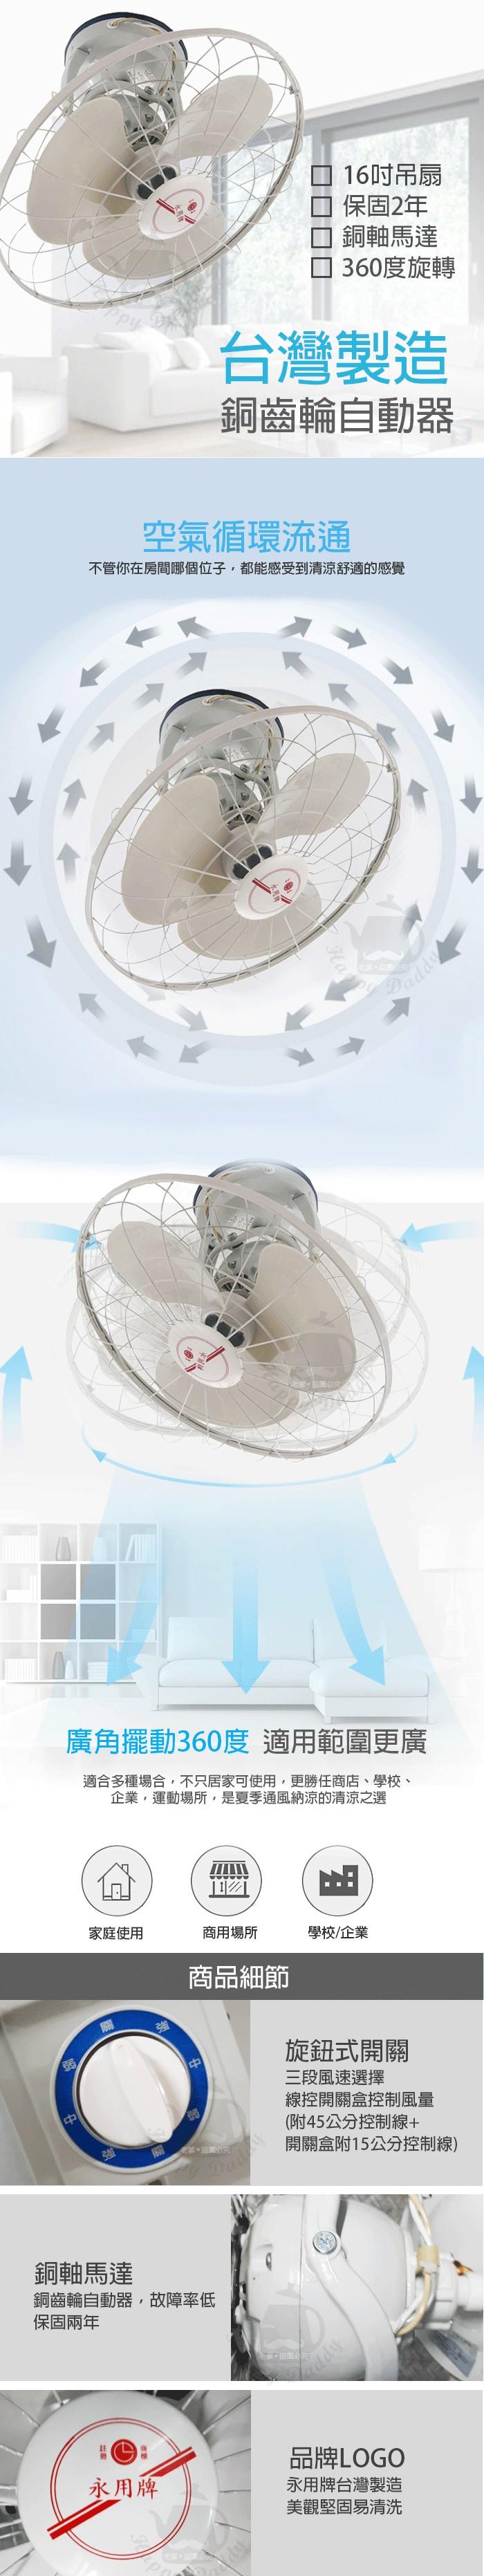 永用牌 MIT 台灣製造360°自動旋轉16吋吊扇/電風扇CL-16